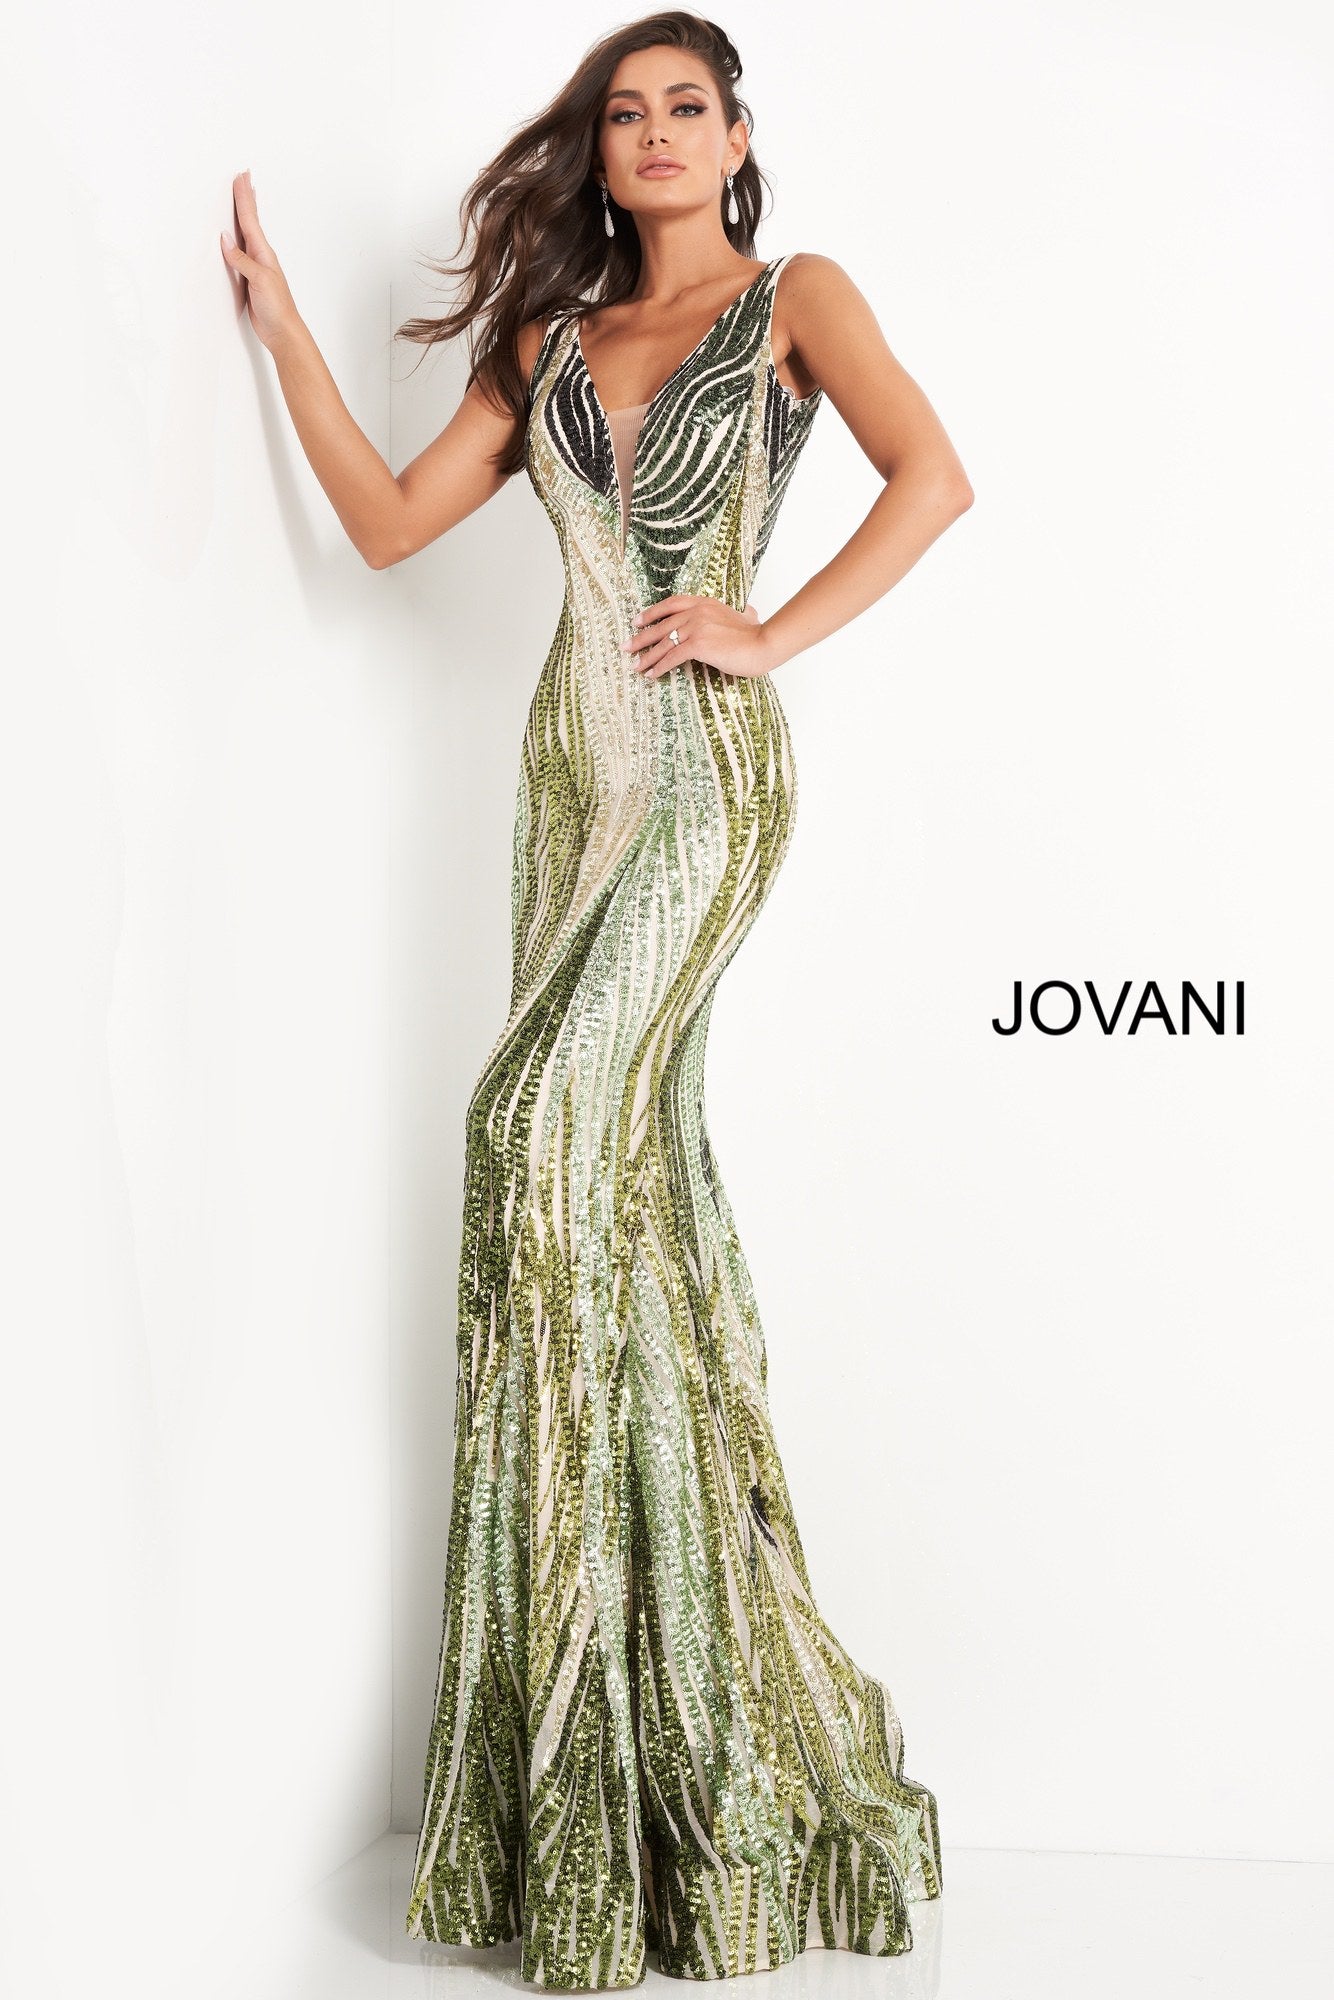 Embellished Plunging Neckline Prom Dress By Jovani -05103